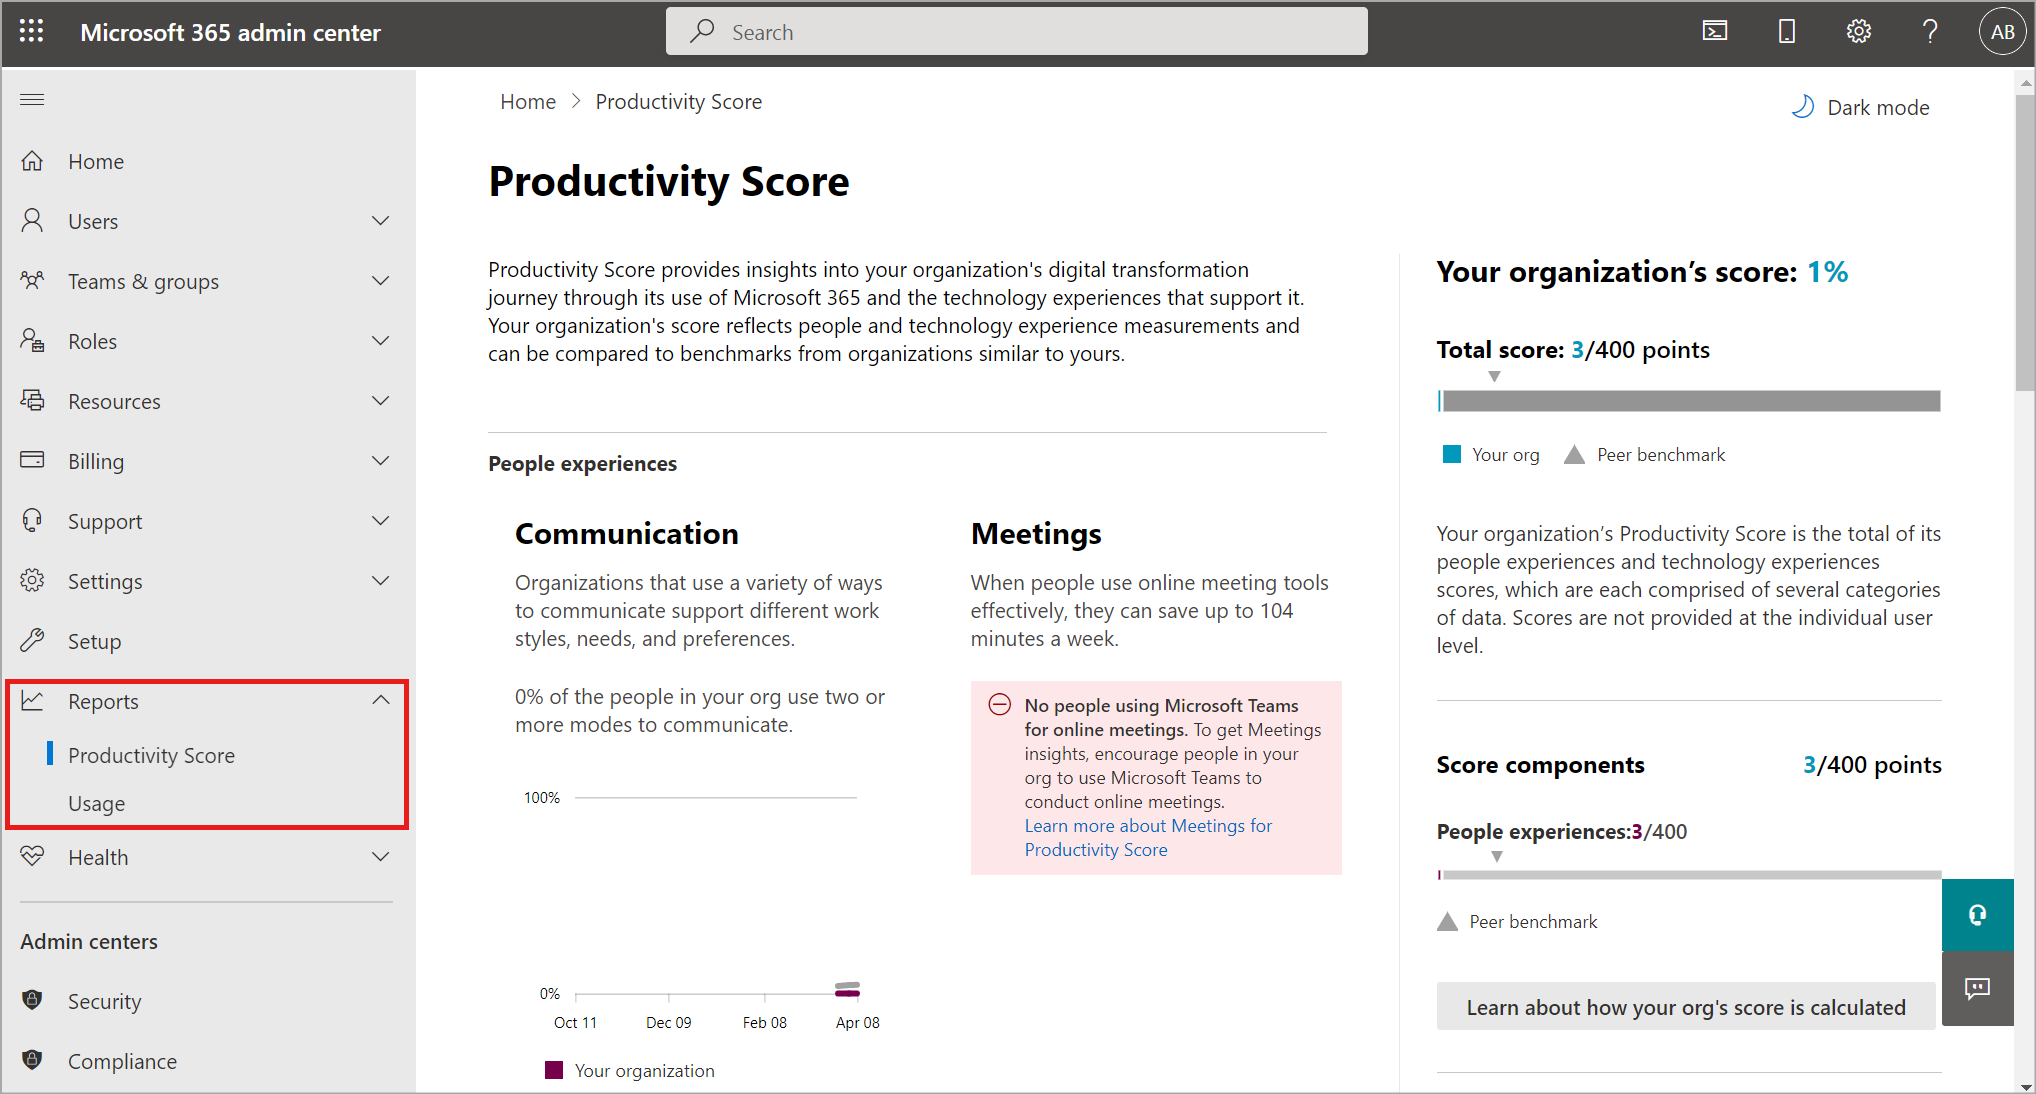 Captura de tela mostrando os relatórios disponíveis no Centro de administração do Microsoft 365.